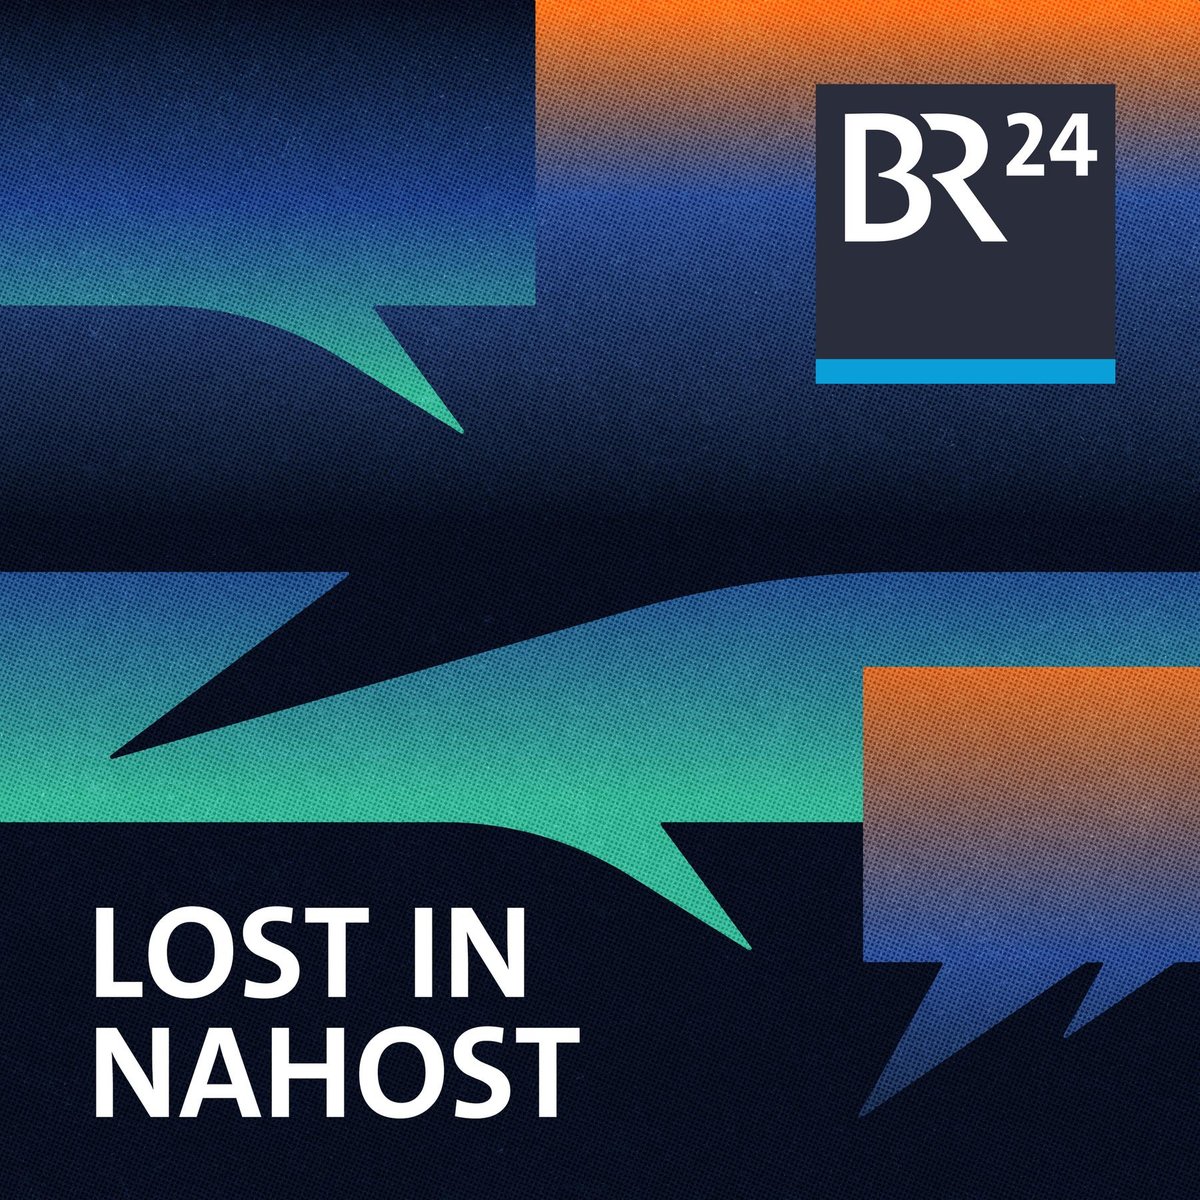 Lost in Nahost - Der Podcast zum Krieg in Israel und Gaza